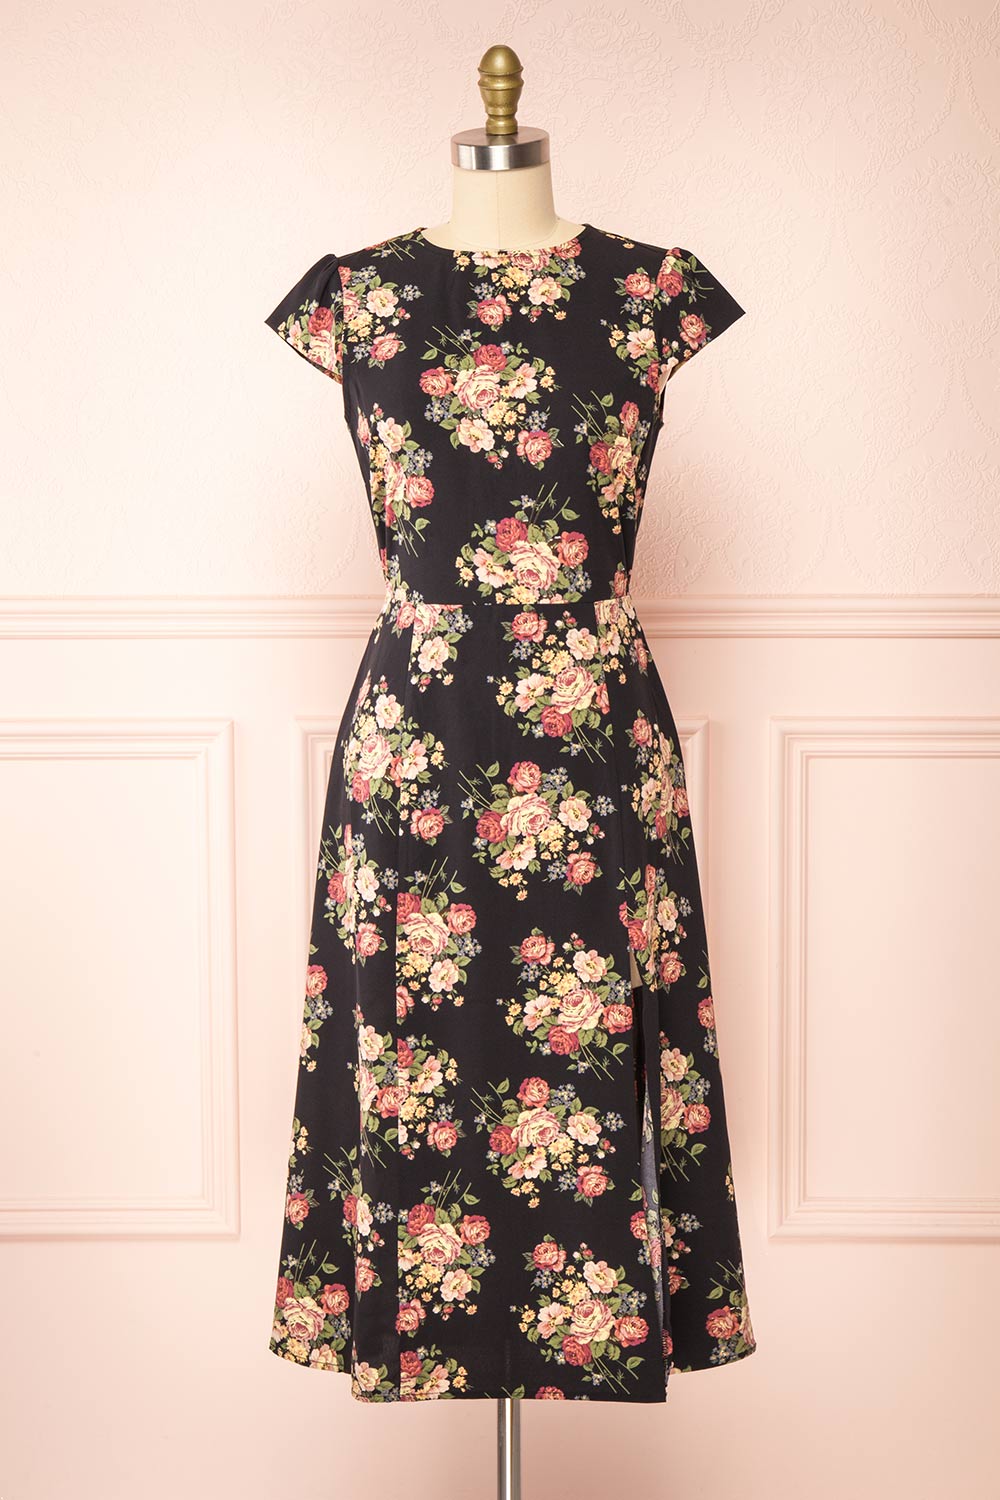 Armal Black Floral A-Line Midi Dress w/ Open Back | Boutique 1861 front view